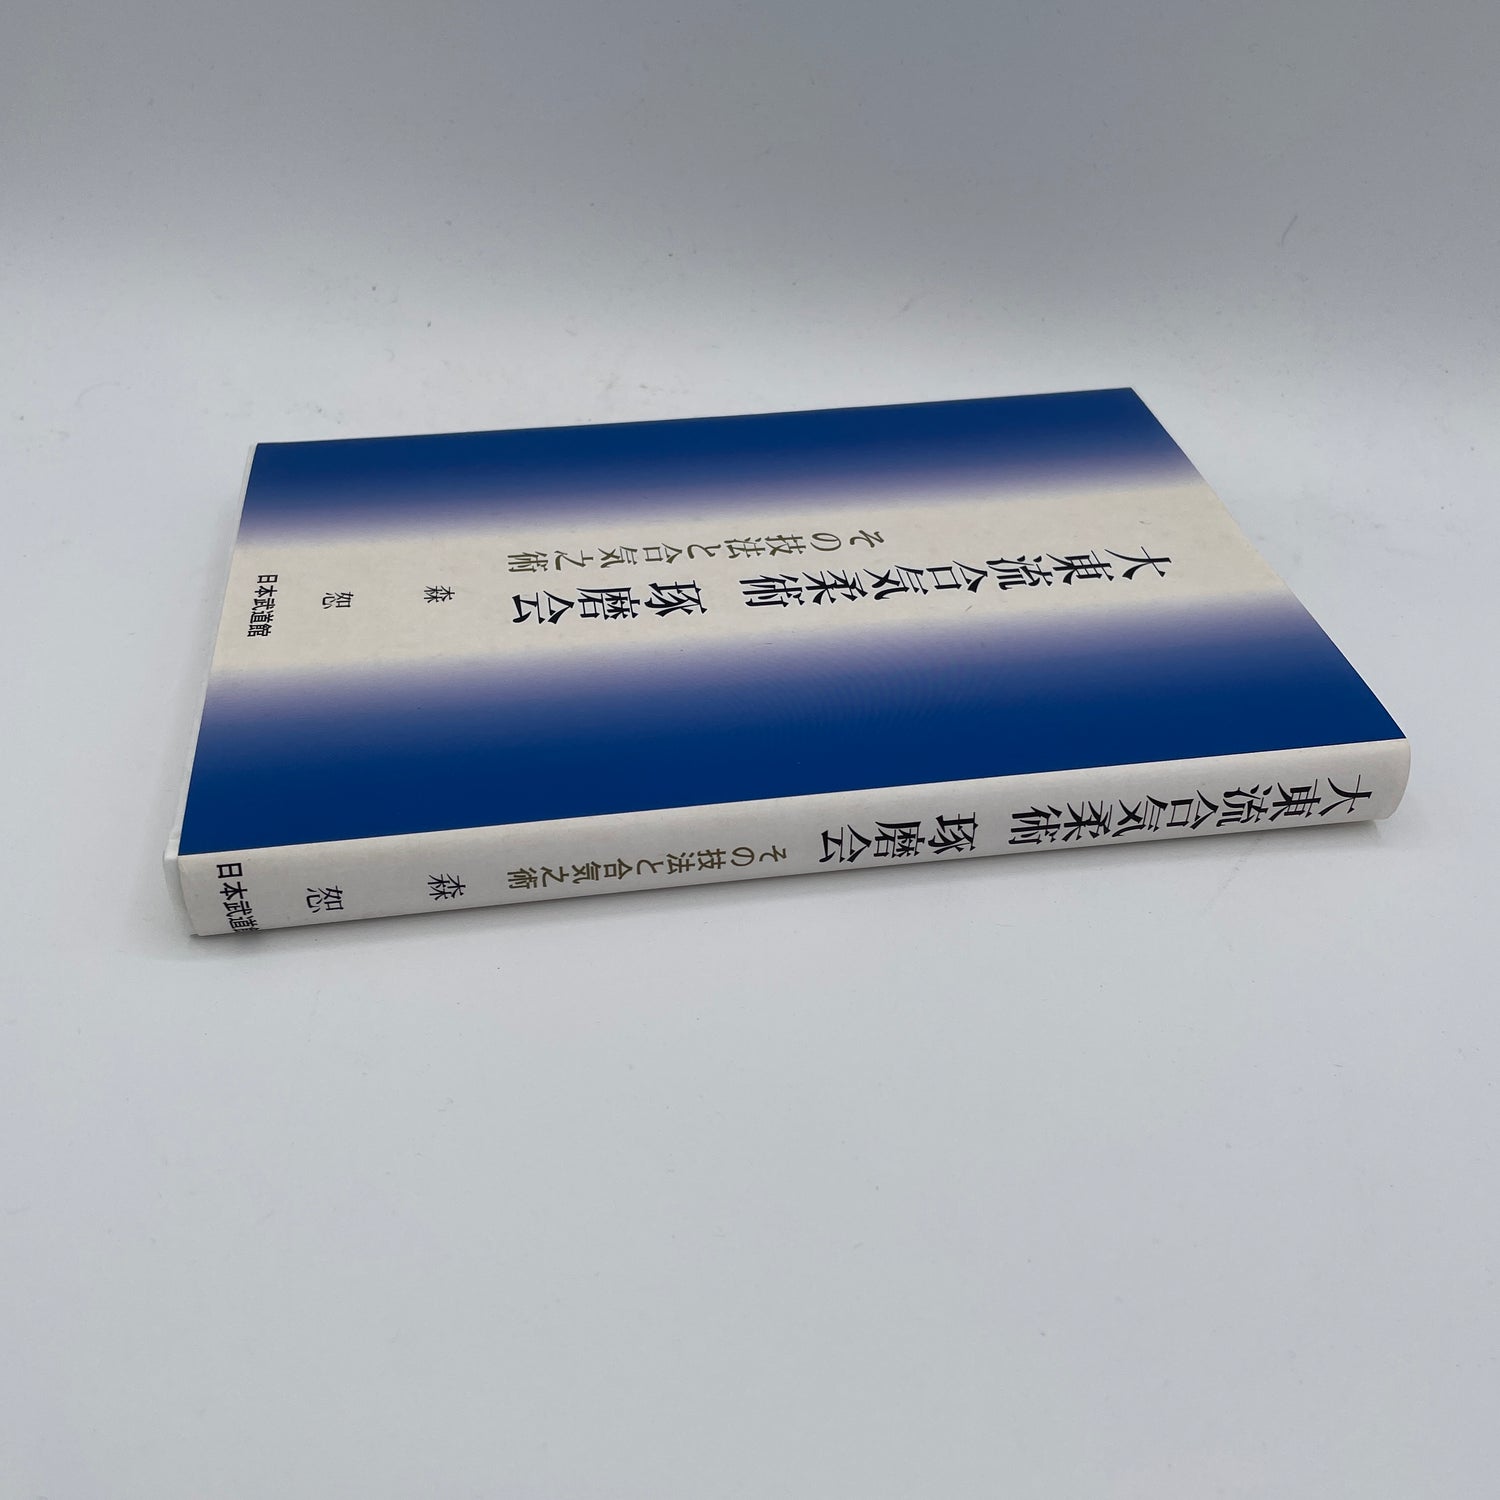 Daito Ryu Aikijujutsu Takumakai: Libro de secretos y técnicas de Aiki de Hakaru Mori